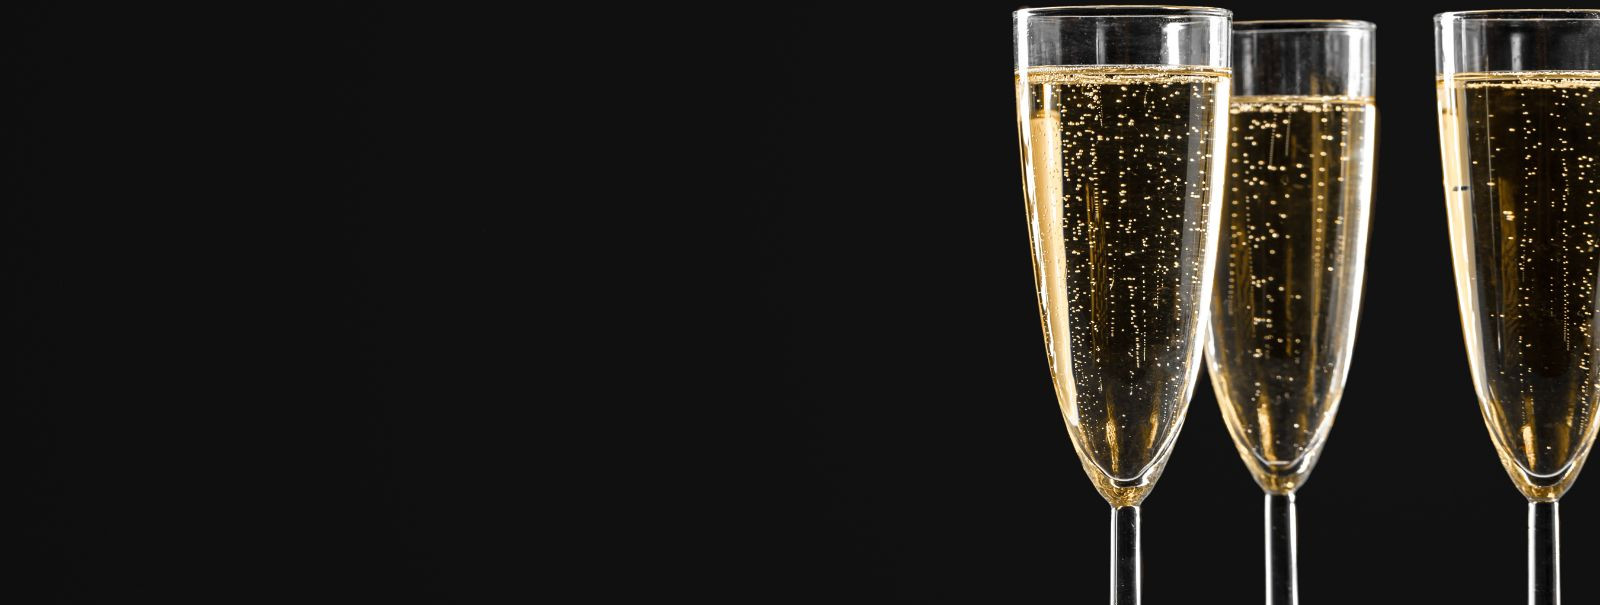 Šampanja, see sõna üksi manab silme ette pildid tähistamisest, luksusest ja peenusest. See kihisev vein, mida toodetakse ainult Prantsusmaa Champagne piirkonnas